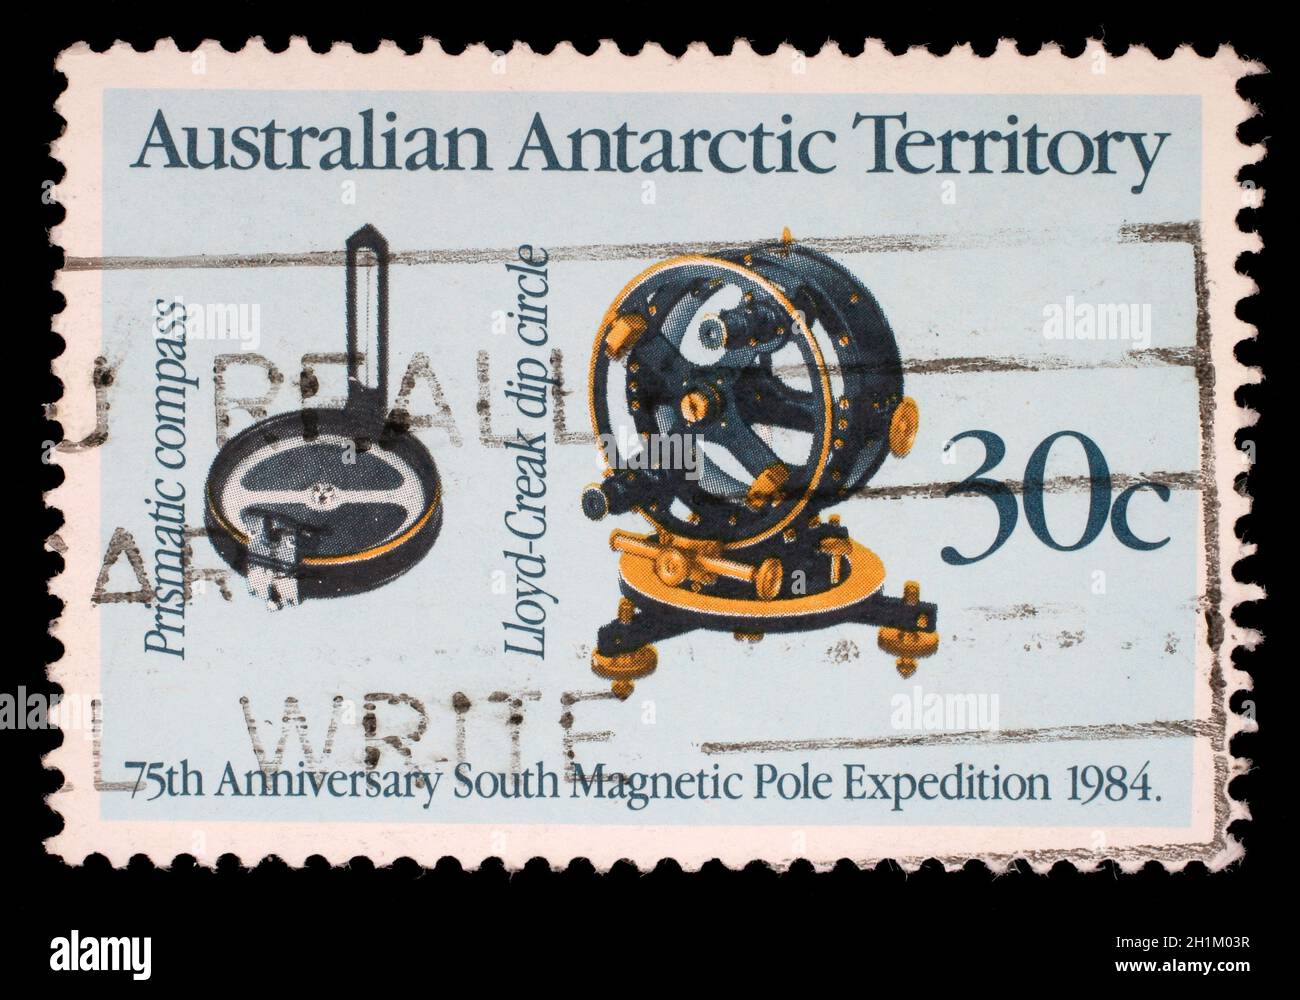 Timbres en l'Australie, Territoire antarctique australien affiche 75e anniversaire expédition pôle Sud magnétique, vers 1984 Banque D'Images